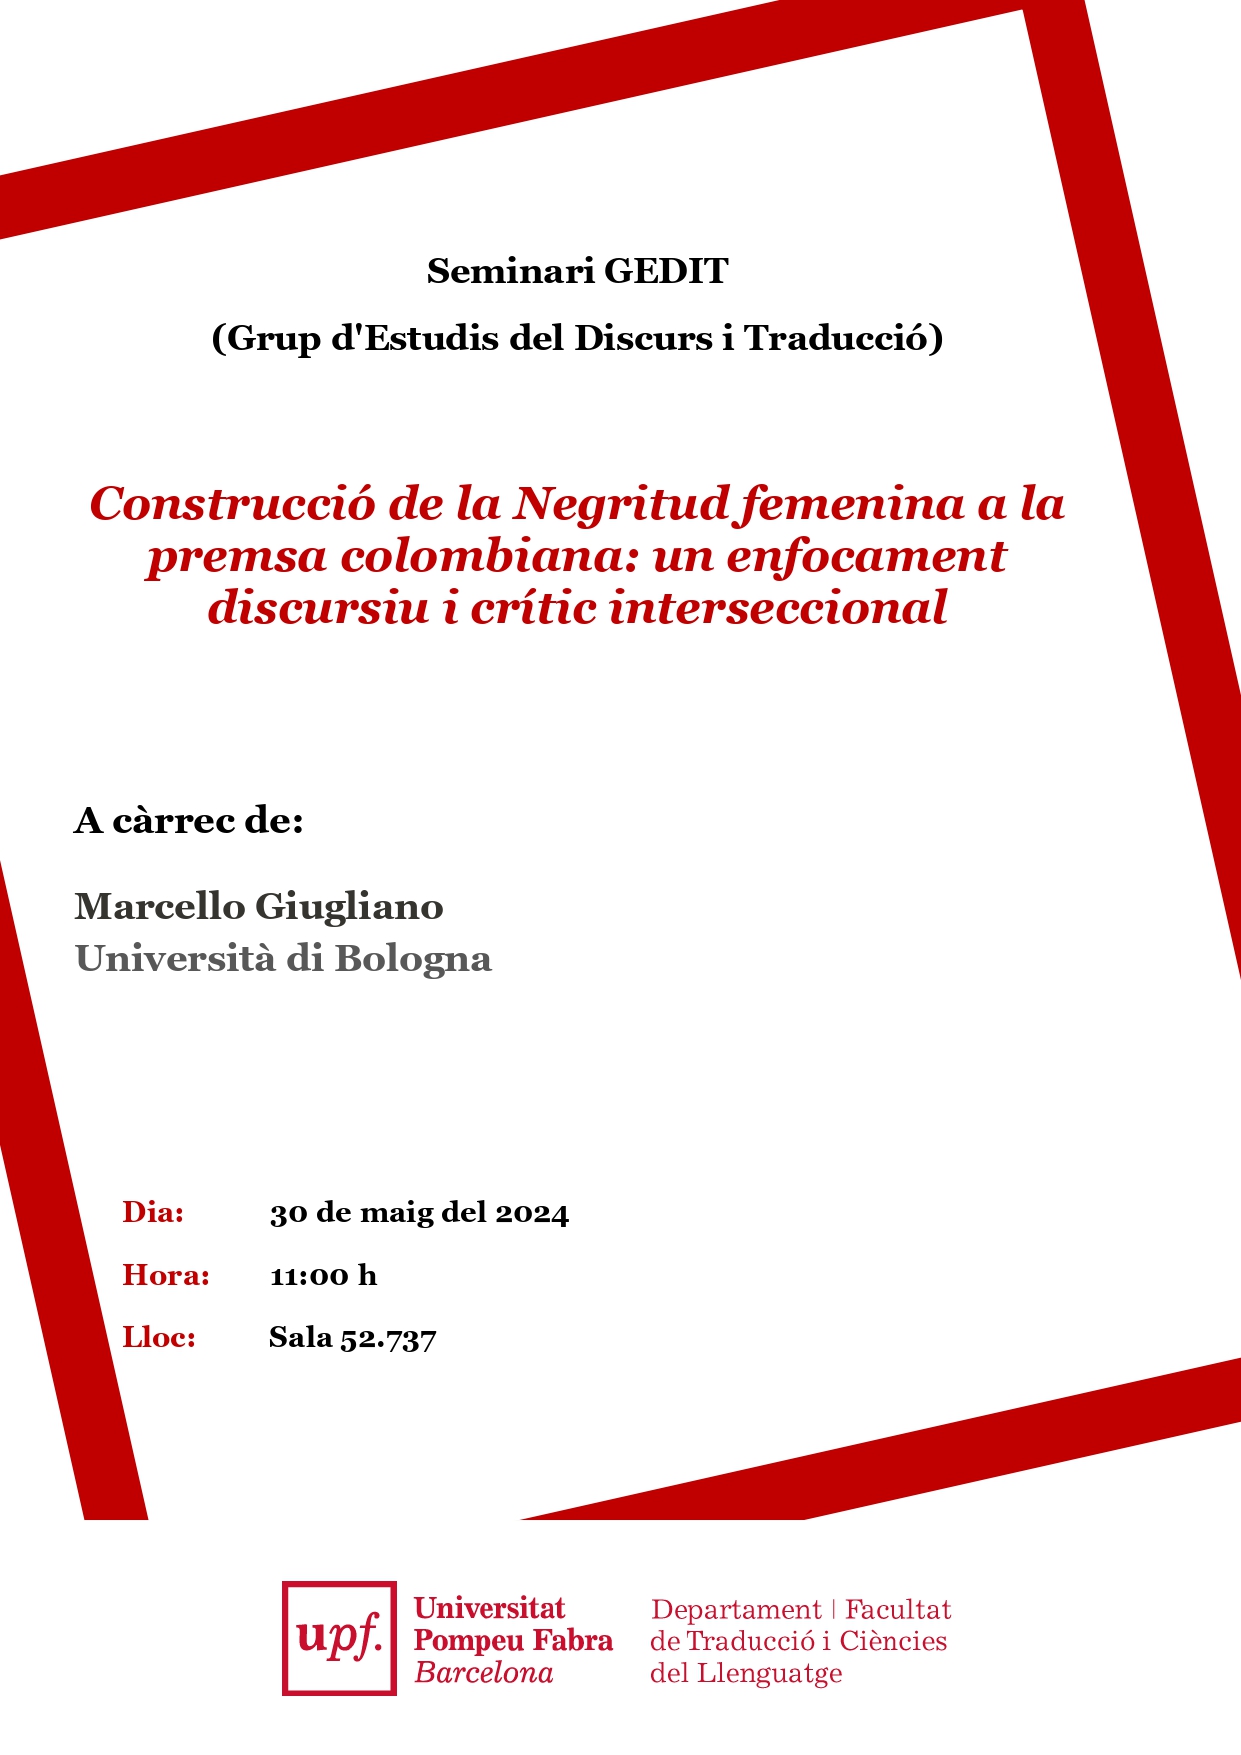 30/05/2024 Seminari del GEDIT, a càrrec de Marcello Giugliano (Università di Bologna)